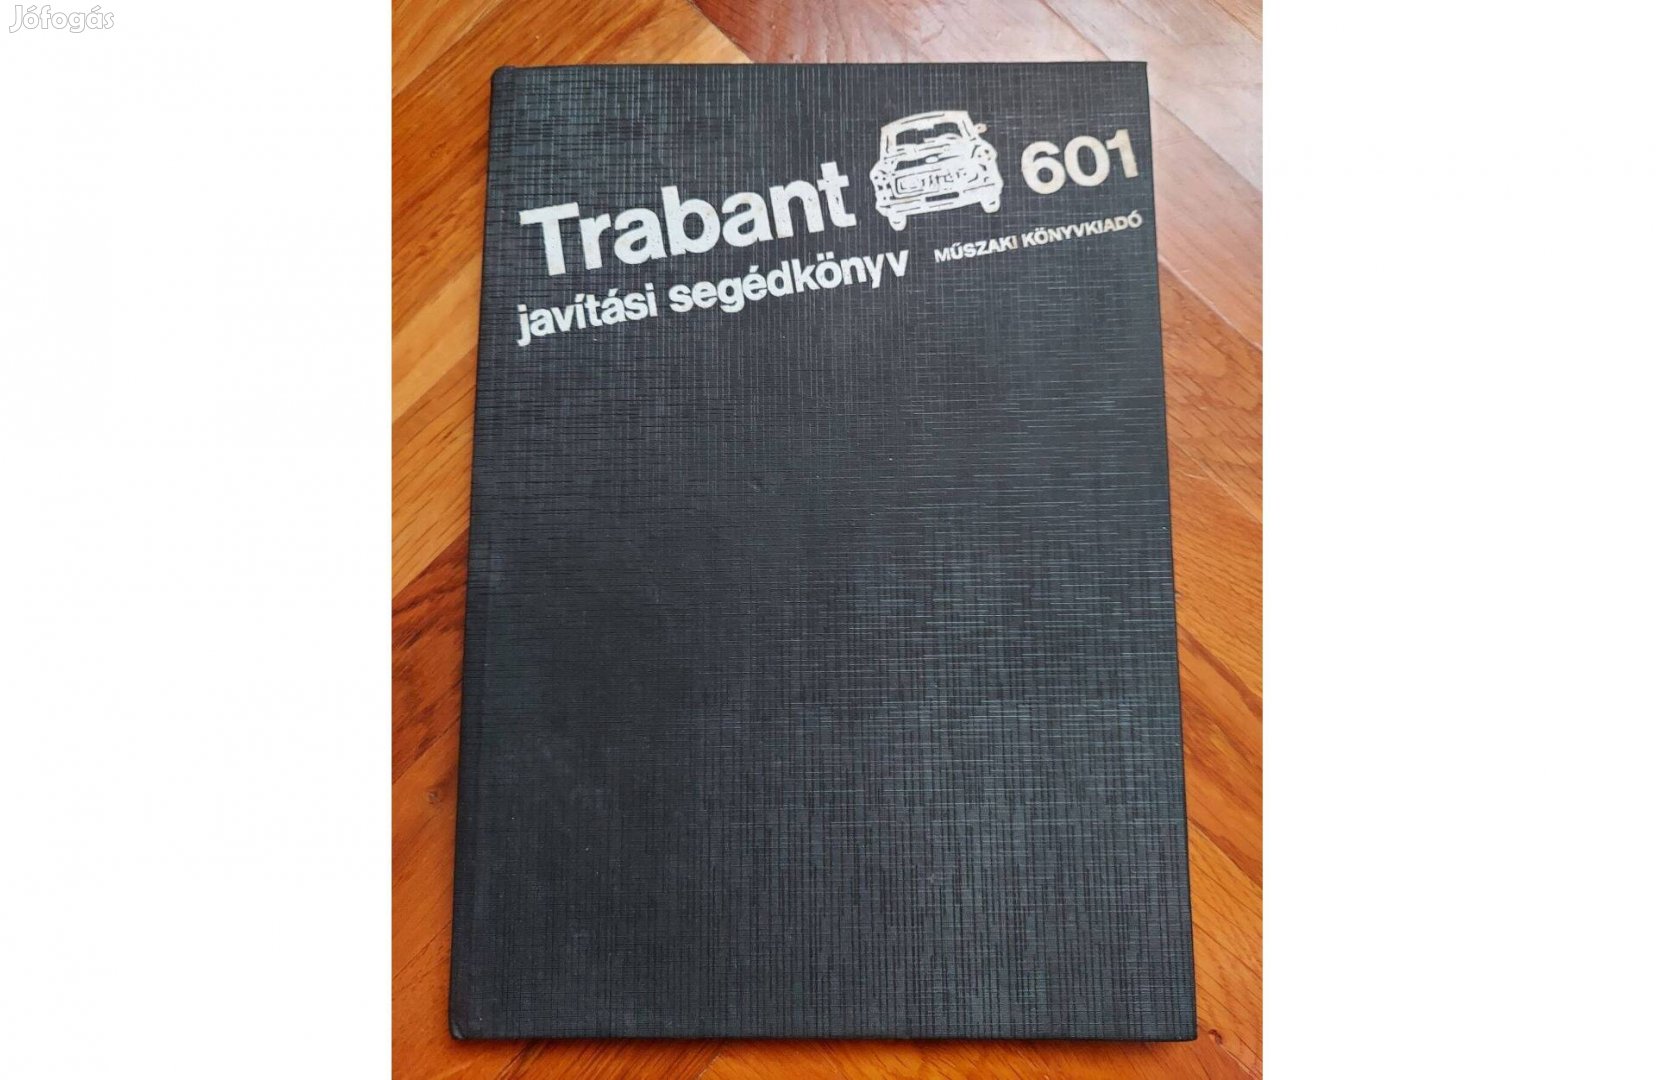 Trabant 601 javítási segédkönyv és Trabant Hogyan tovább?